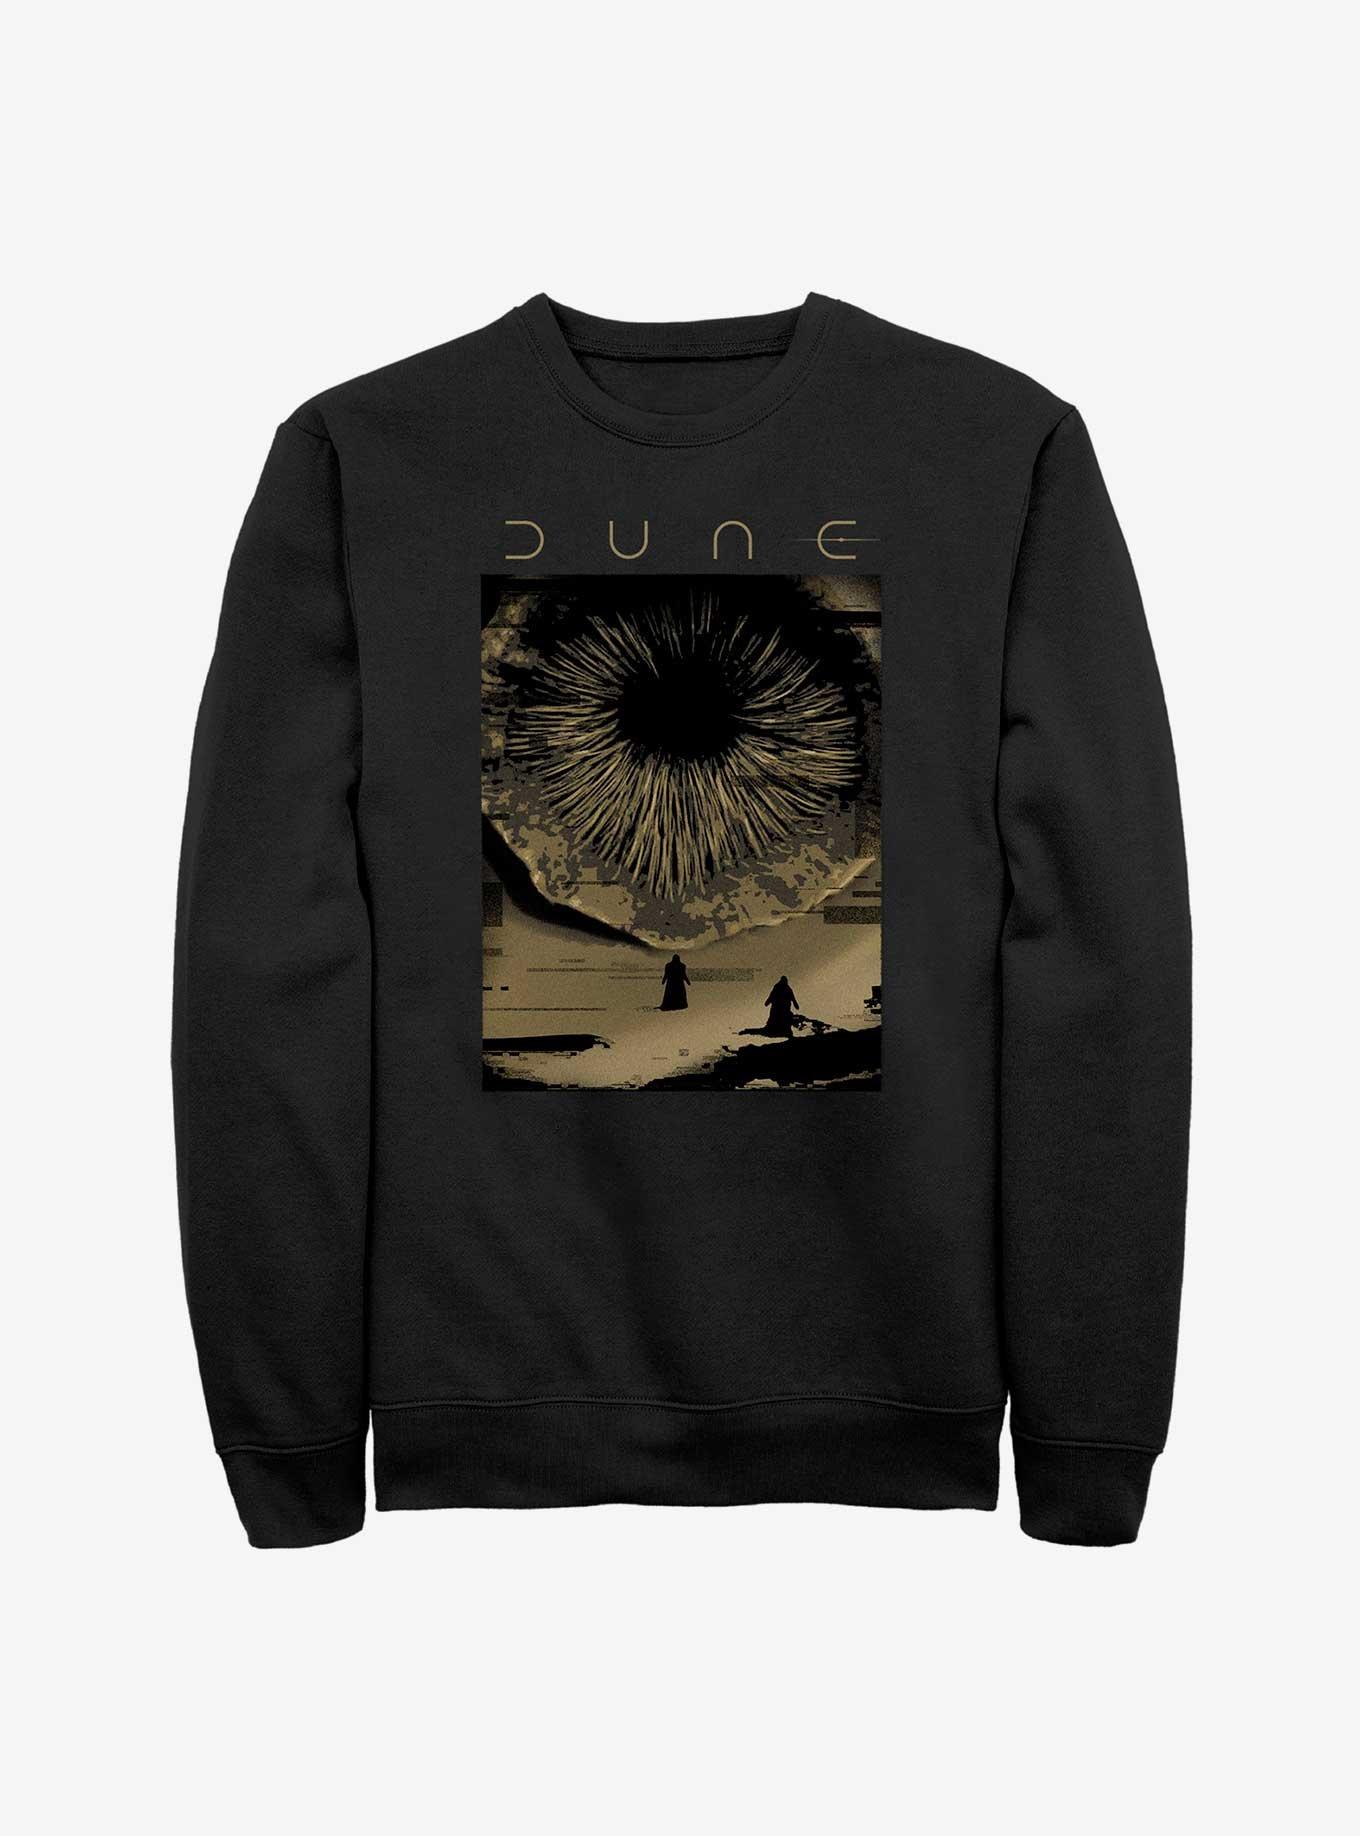 Dune Shai-Hulud Poster Sweatshirt, BLACK, hi-res